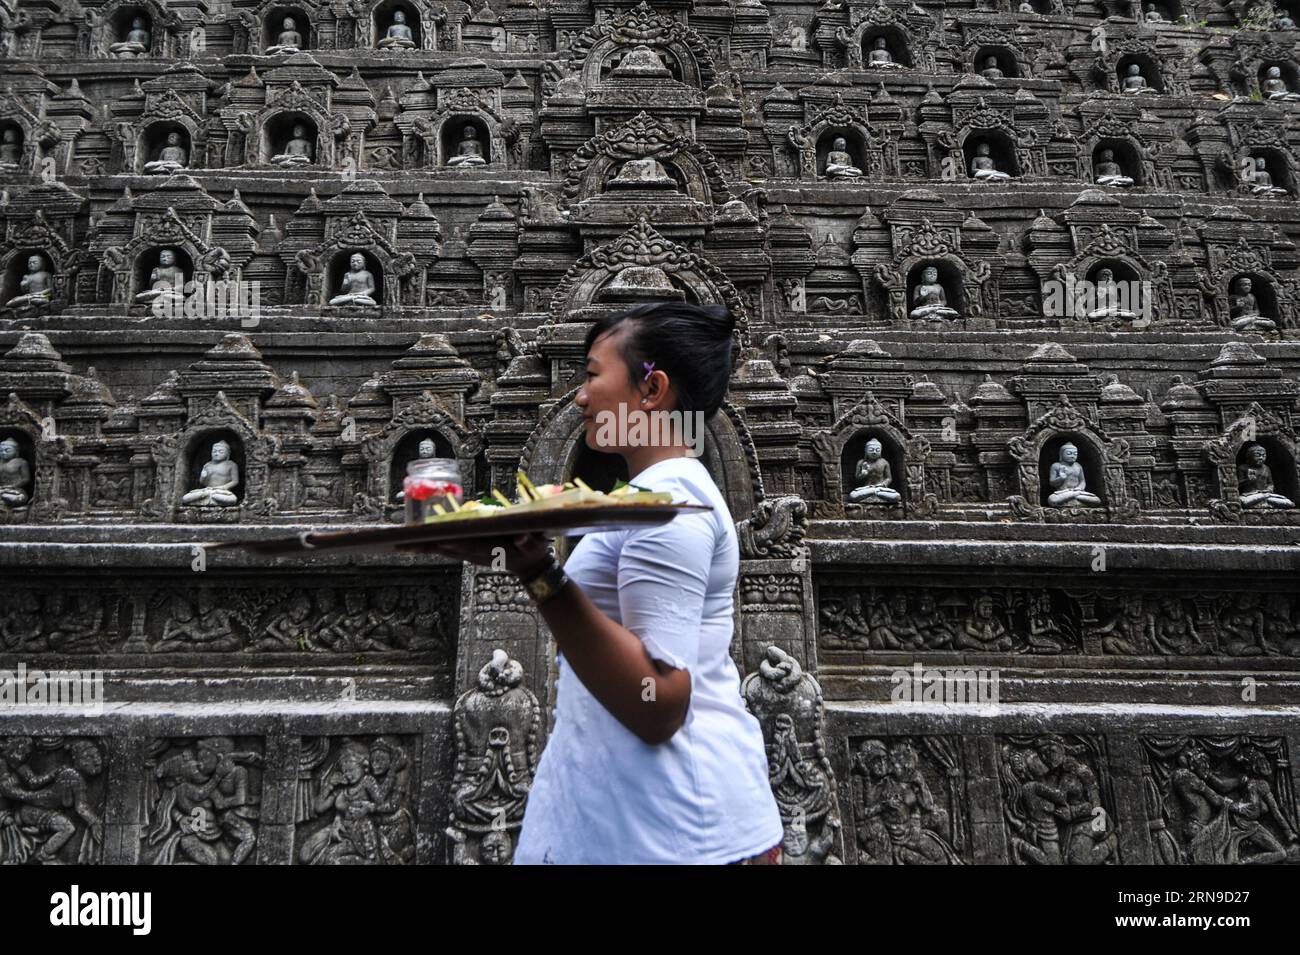 (151129) -- BALI, 29 novembre 2015 -- Une femme passe devant une réplique du temple Borobudur sculpté sur le mur de la falaise à Ayung Resort, Ubud, Bali, Indonésie, 29 novembre 2015. Ubud est l ' une des zones touristiques de Bali célèbre pour sa culture et ses paysages naturels.) INDONESIA-BALI-AYUNG RESORT VerixSanovri PUBLICATIONxNOTxINxCHN 151129 Bali nov 29 2015 une femme passe devant la réplique du temple Borobudur sculptée SUR le mur de falaise À Ayung Resort Ubud Bali Indonésie nov 29 2015 Ubud EST l'une des zones touristiques de Bali célèbre pour sa culture et ses paysages naturels Indonesia Bali Ayung Resort VerixSanovri PUBLICATIONxNOTx Banque D'Images